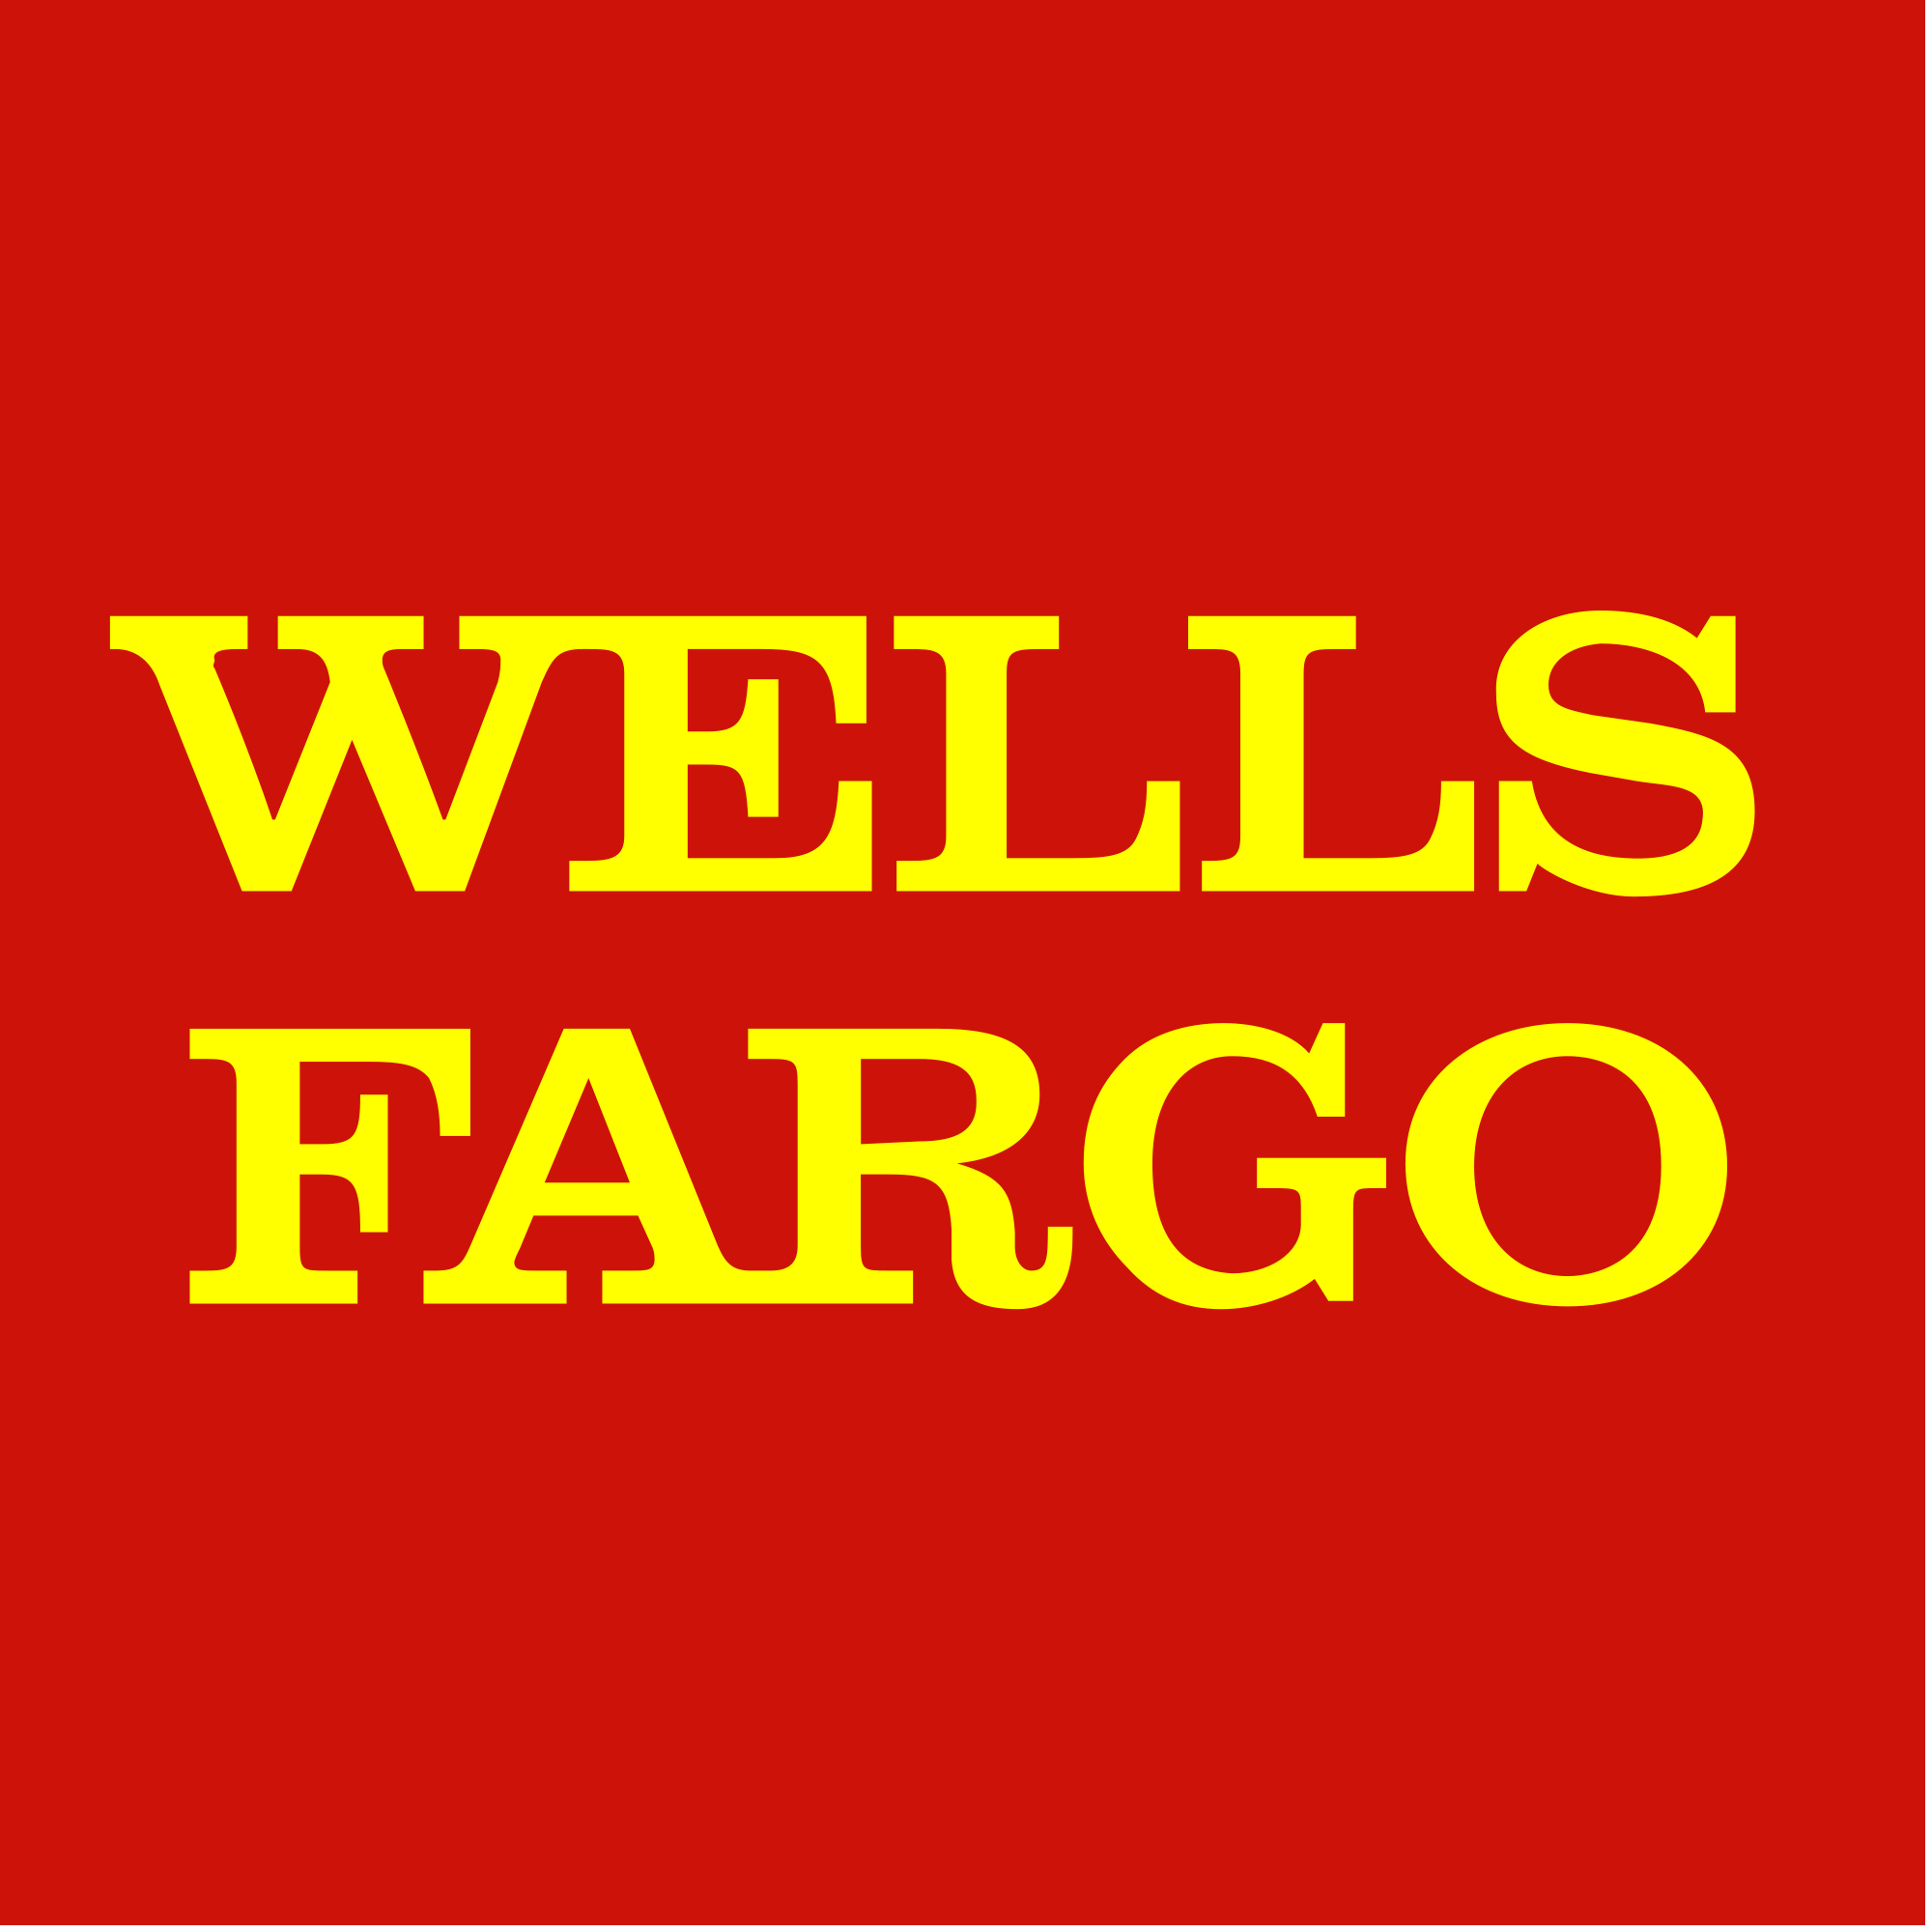 Wells_Fargo_logo.png